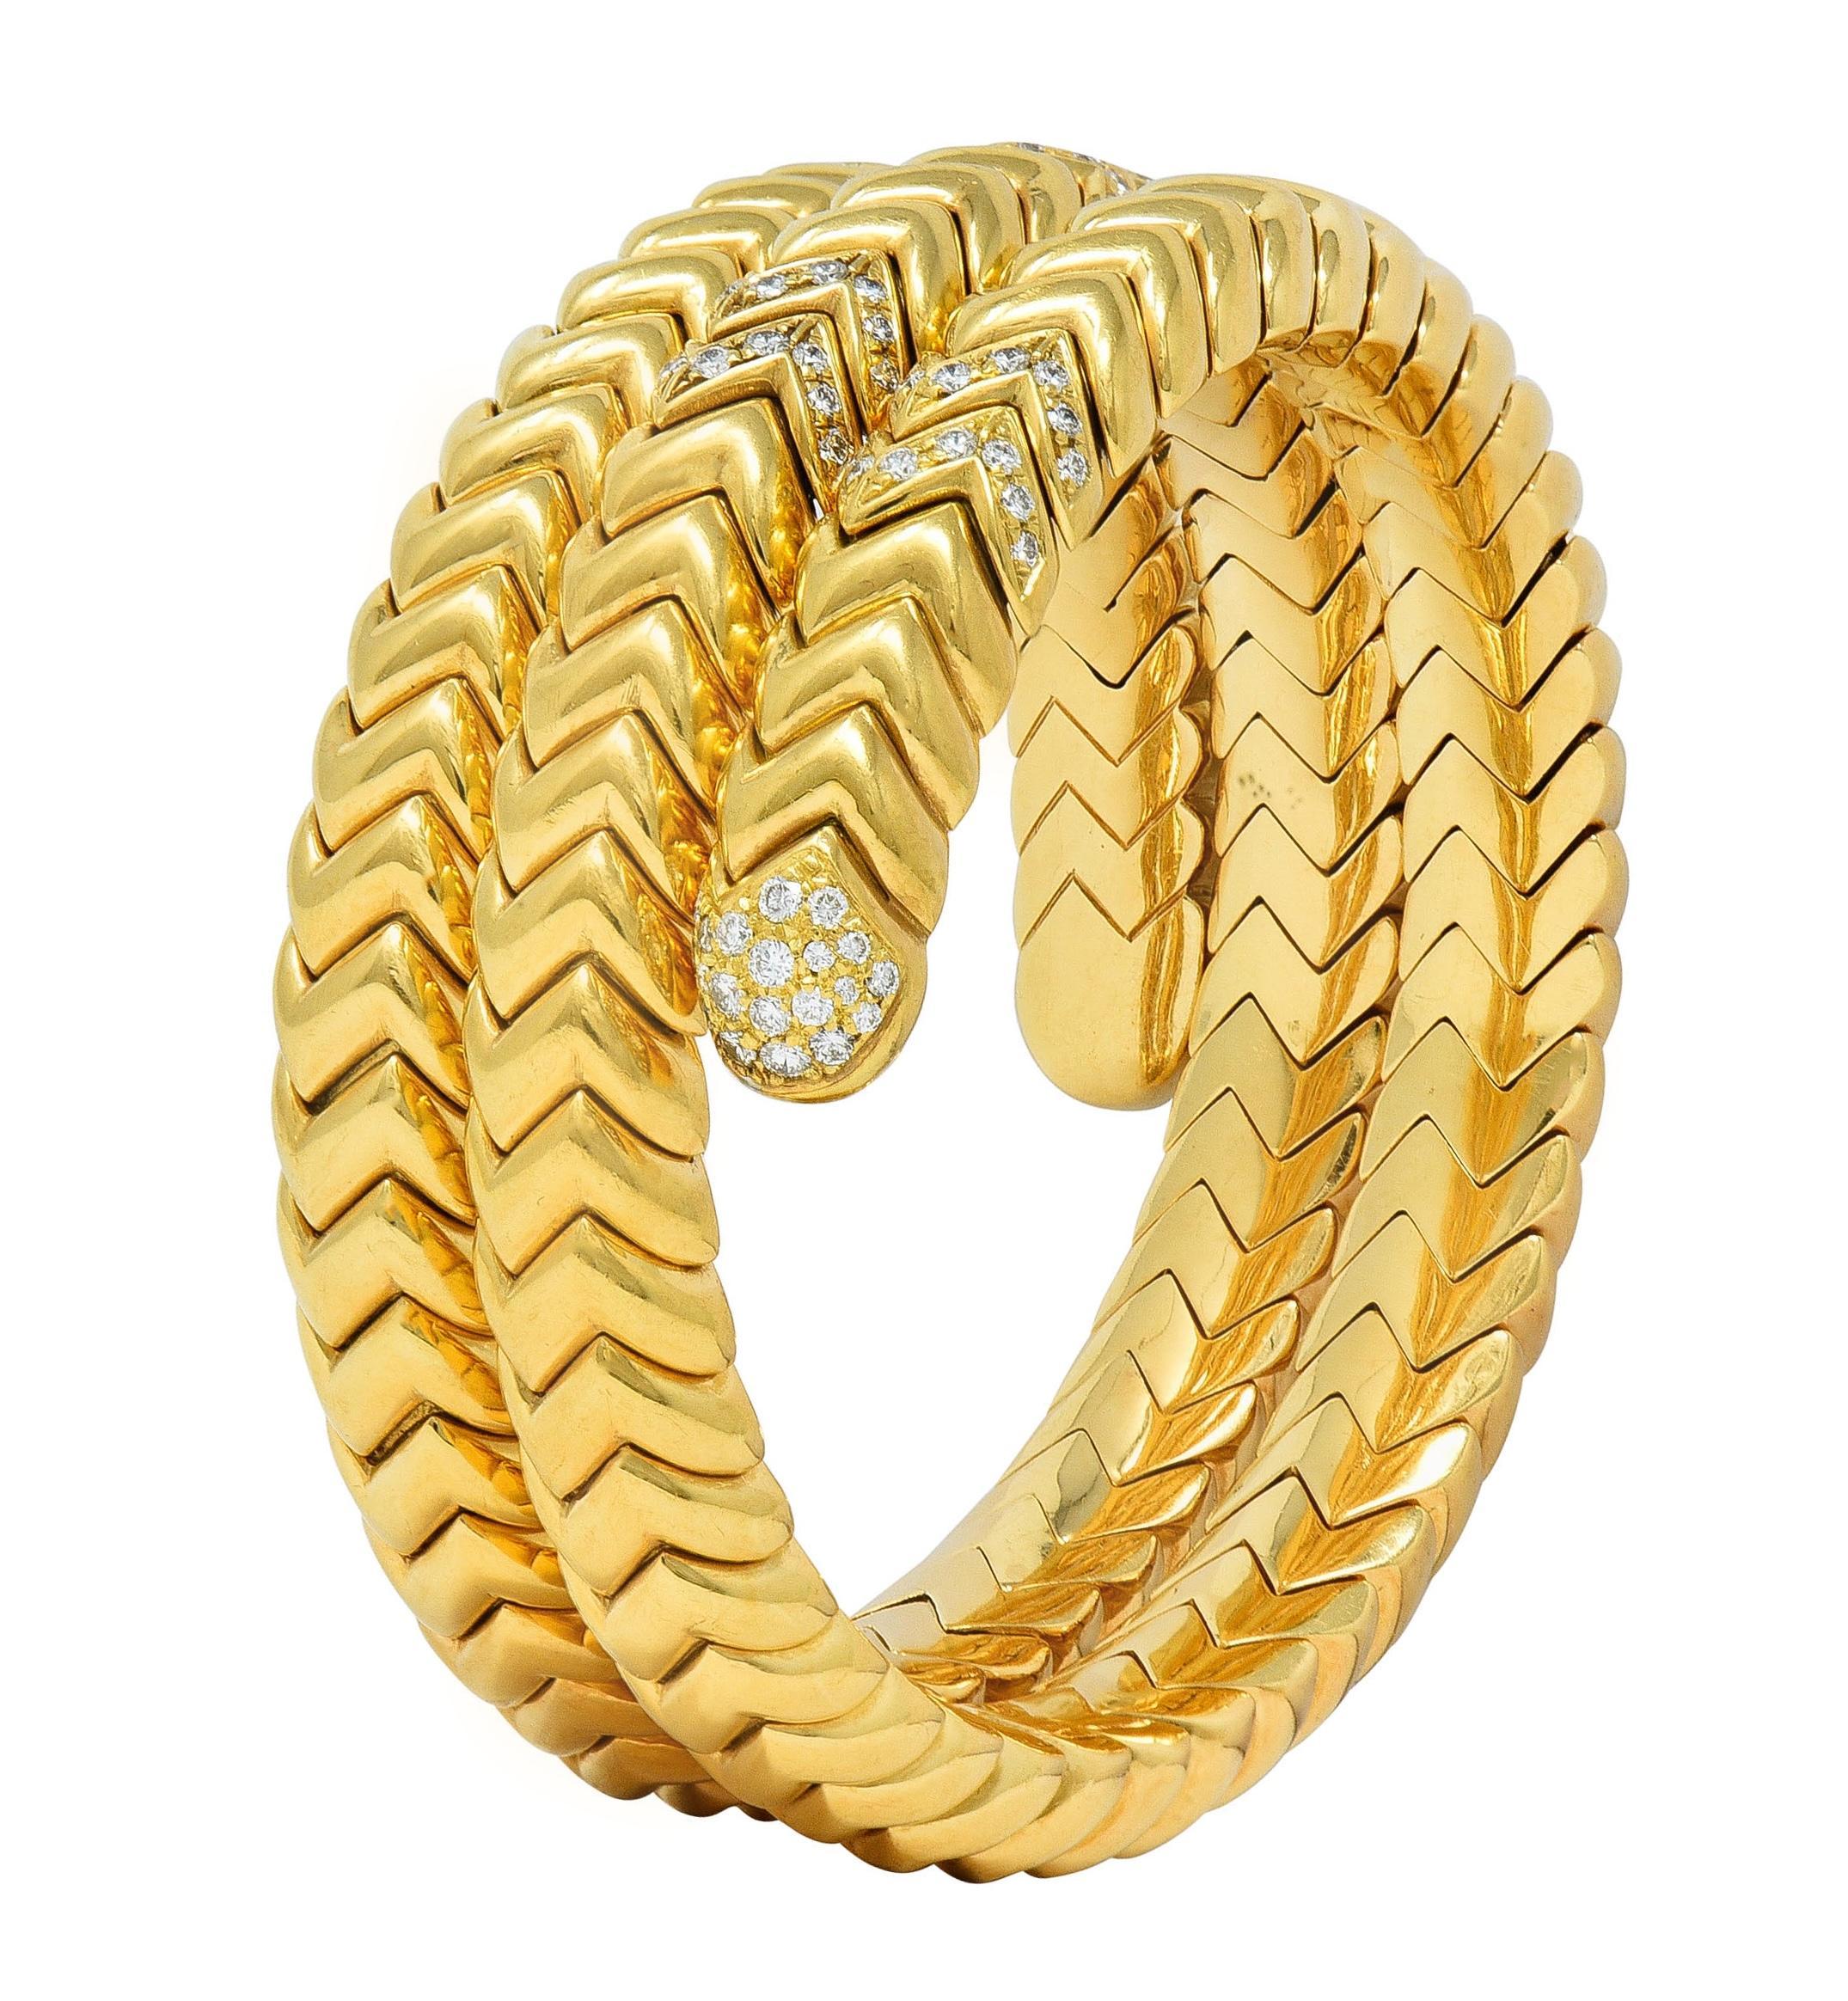 Conçu comme un bracelet souple de style tubogas composé de segments en zigzag à motif 'Spiga'.
Les terminaux arrondis sont ornés de diamants ronds de taille brillant dans des segments pavés.
D'un poids total d'environ 2.50 carat - Couleur F/G et